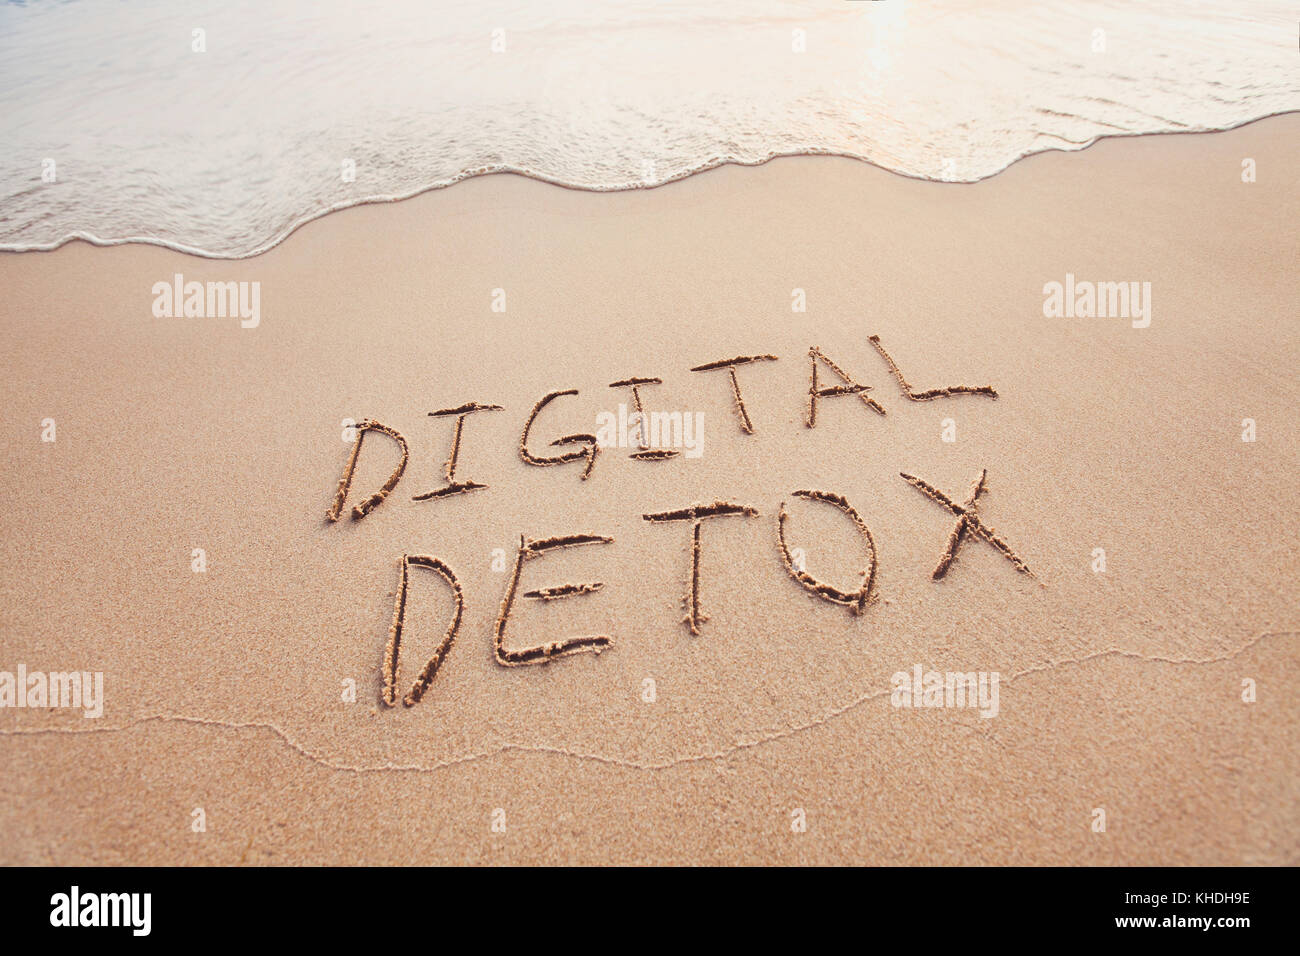 Concept detox numérique, mots écrits sur le sable de plage Banque D'Images